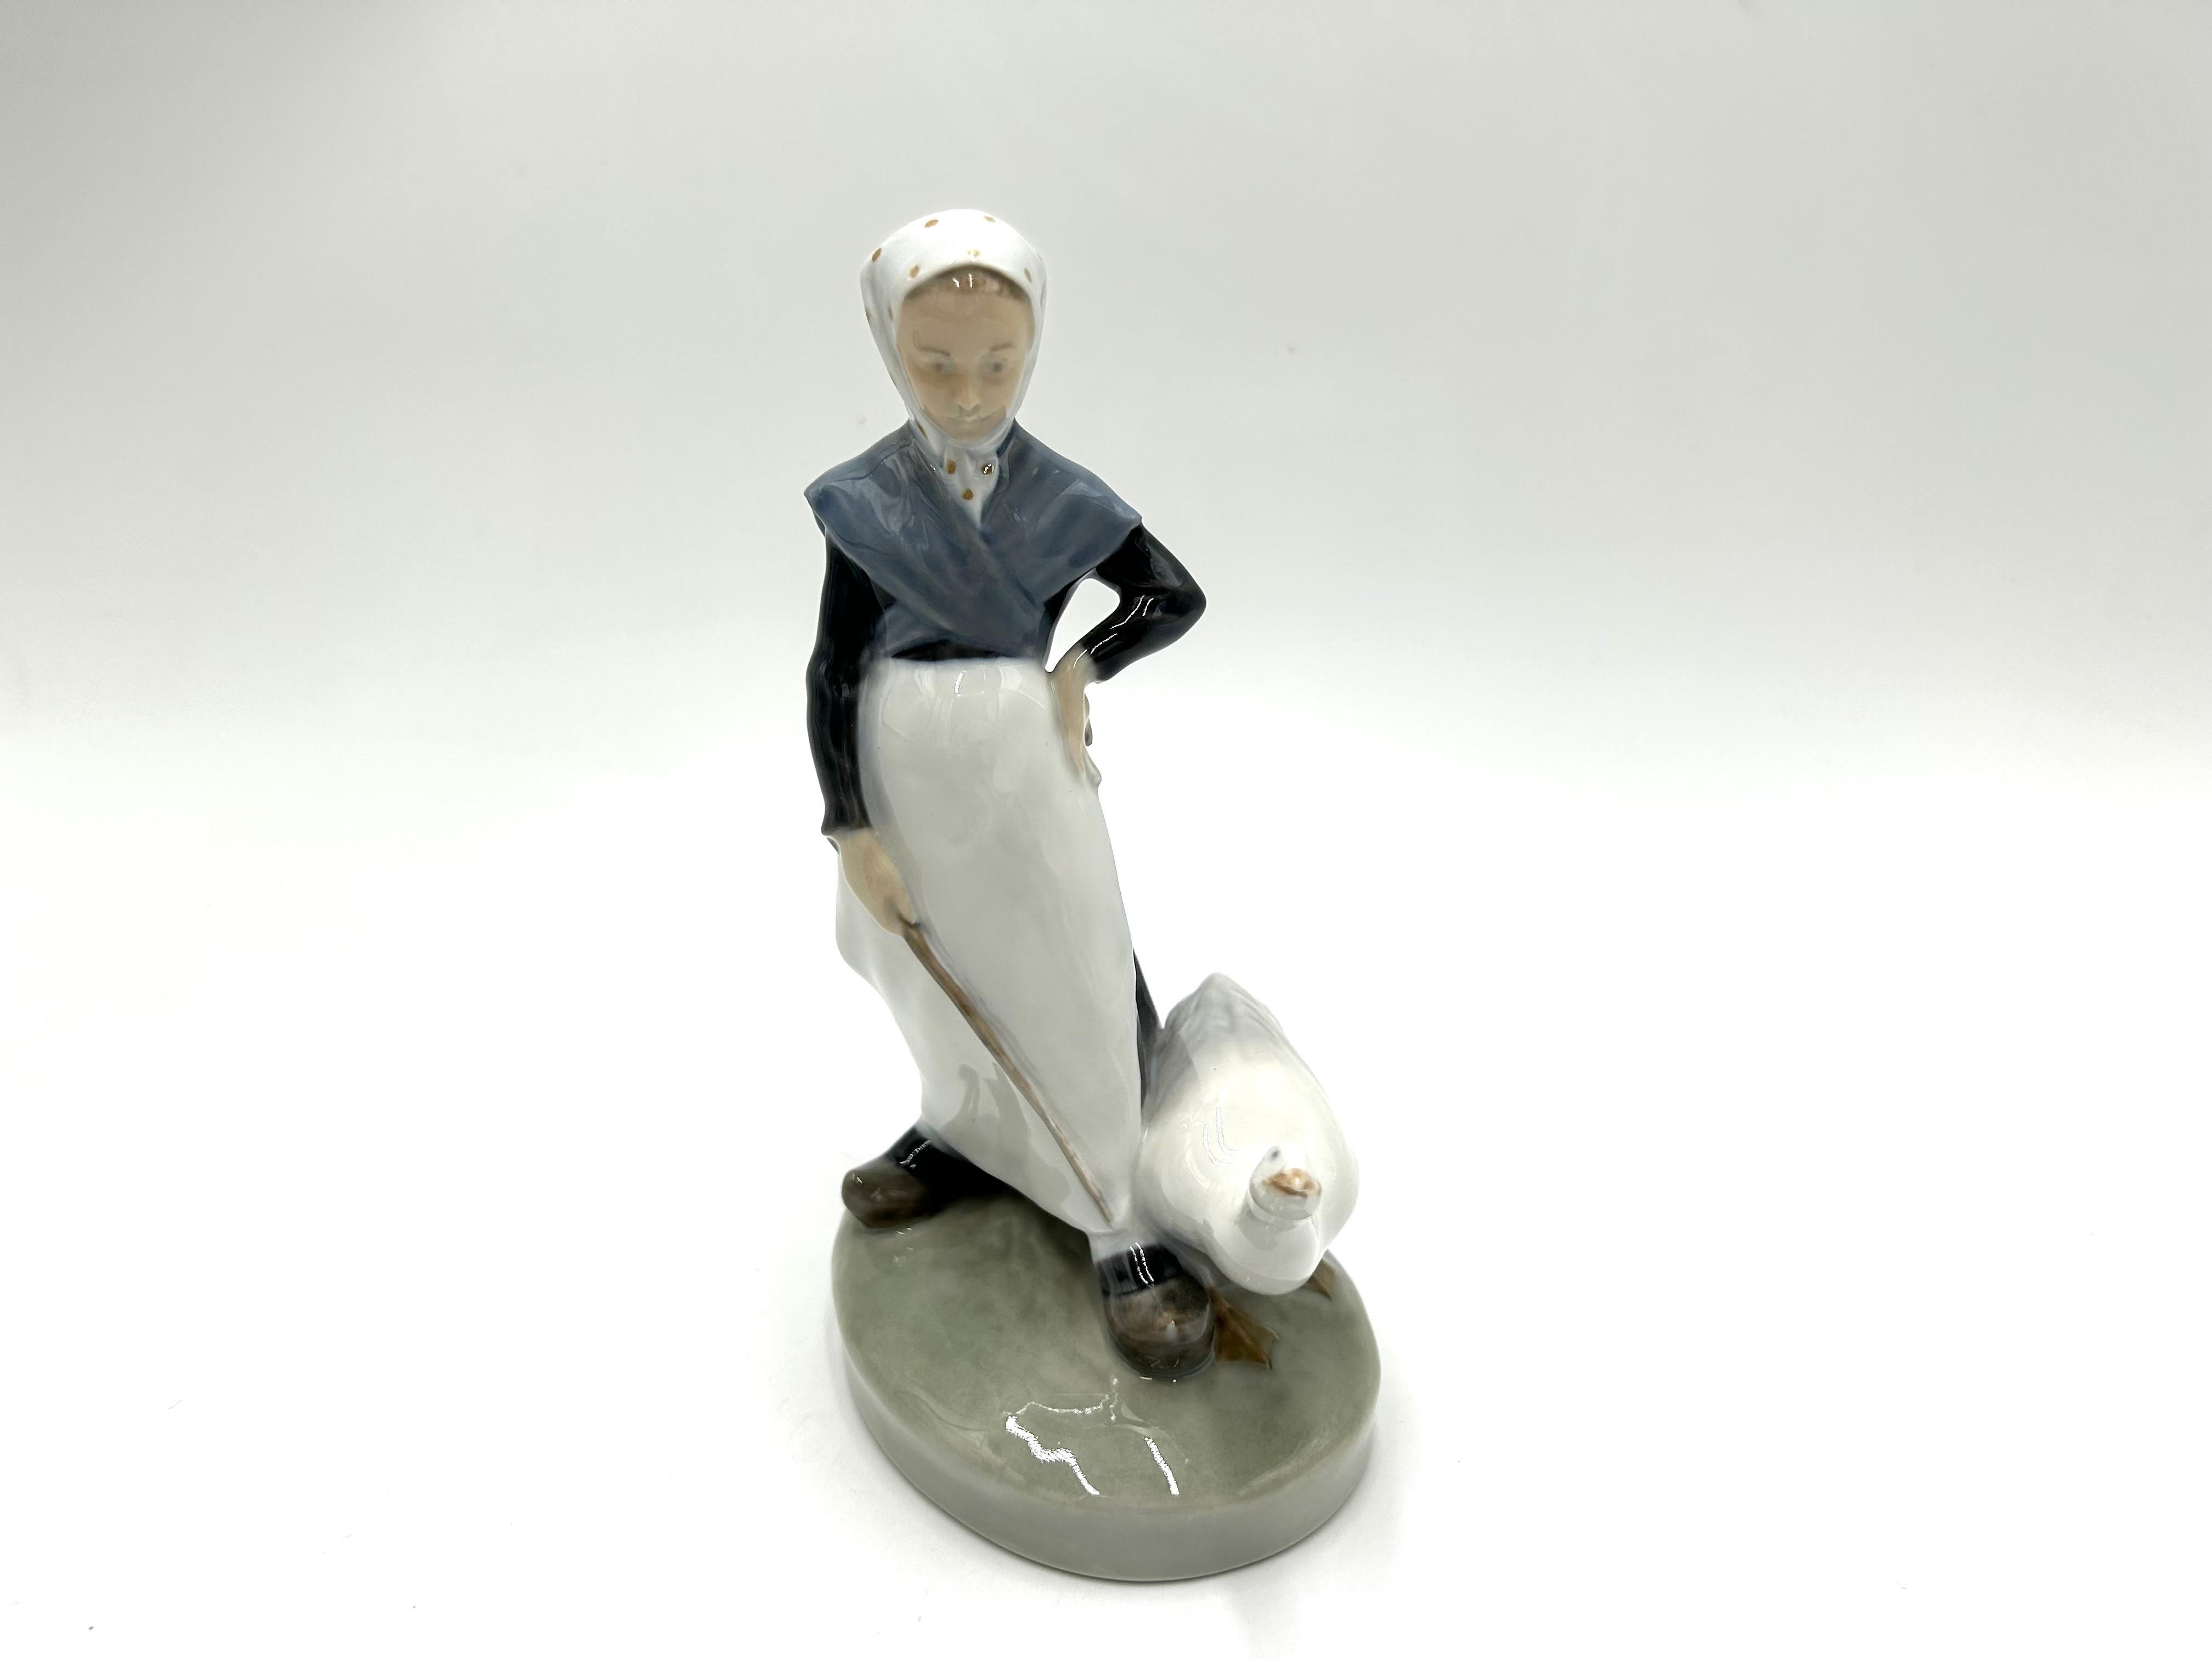 Porzellanfigur eines Mädchens mit einer Gans
Produziert von der dänischen Manufaktur Royal Copenhagen
Die Marke wird 1961 verwendet.
Sehr guter Zustand ohne Schäden
Höhe: 19cm
Breite: 10cm
Tiefe: 8 cm